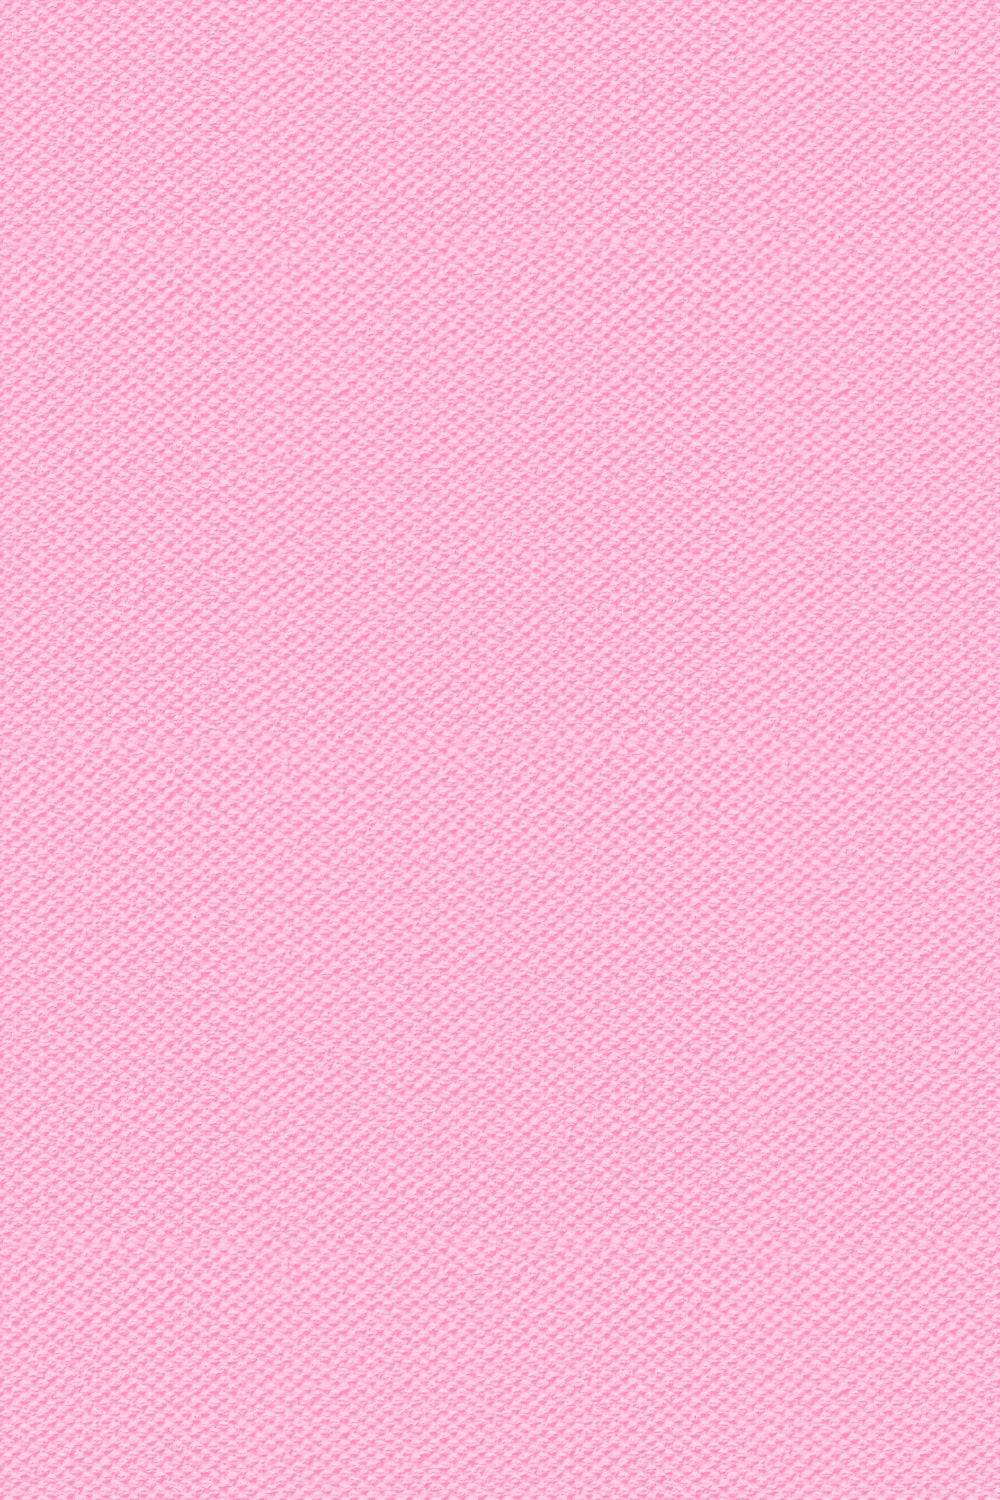 Hình nền màu hồng nhạt sẽ mang lại cho bạn cảm giác nhẹ nhàng và dịu dàng. Truy cập ngay để xem các mẫu hình nền màu hồng nhạt đầy sáng tạo và phù hợp với phong cách của bạn.